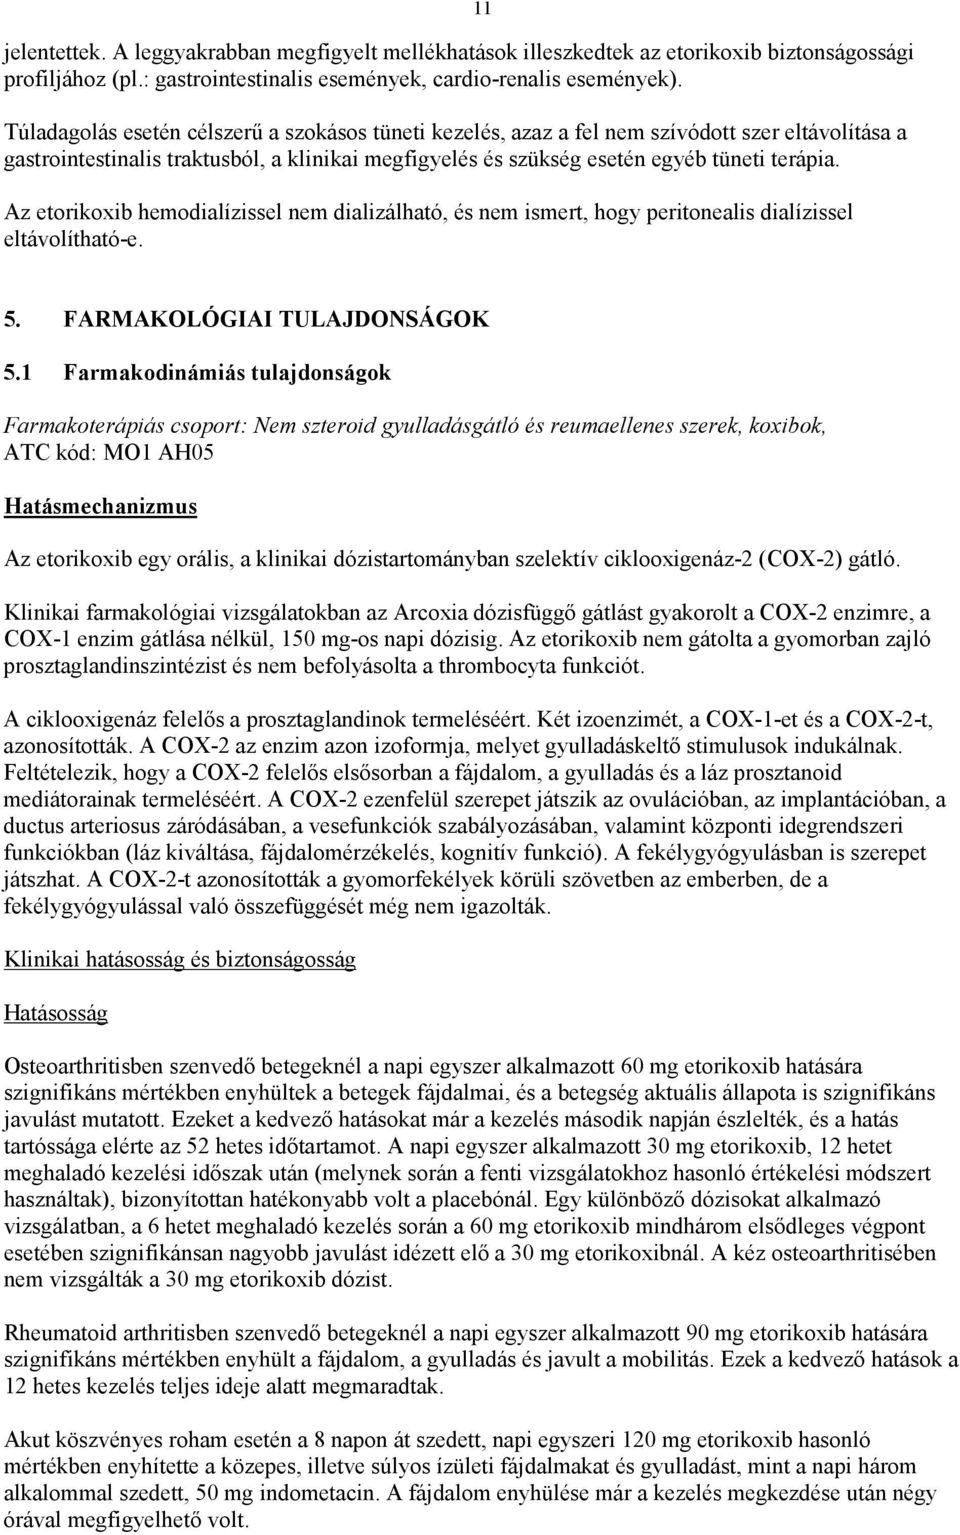 Az etorikoxib hemodialízissel nem dializálható, és nem ismert, hogy peritonealis dialízissel eltávolítható-e. 11 5. FARMAKOLÓGIAI TULAJDONSÁGOK 5.